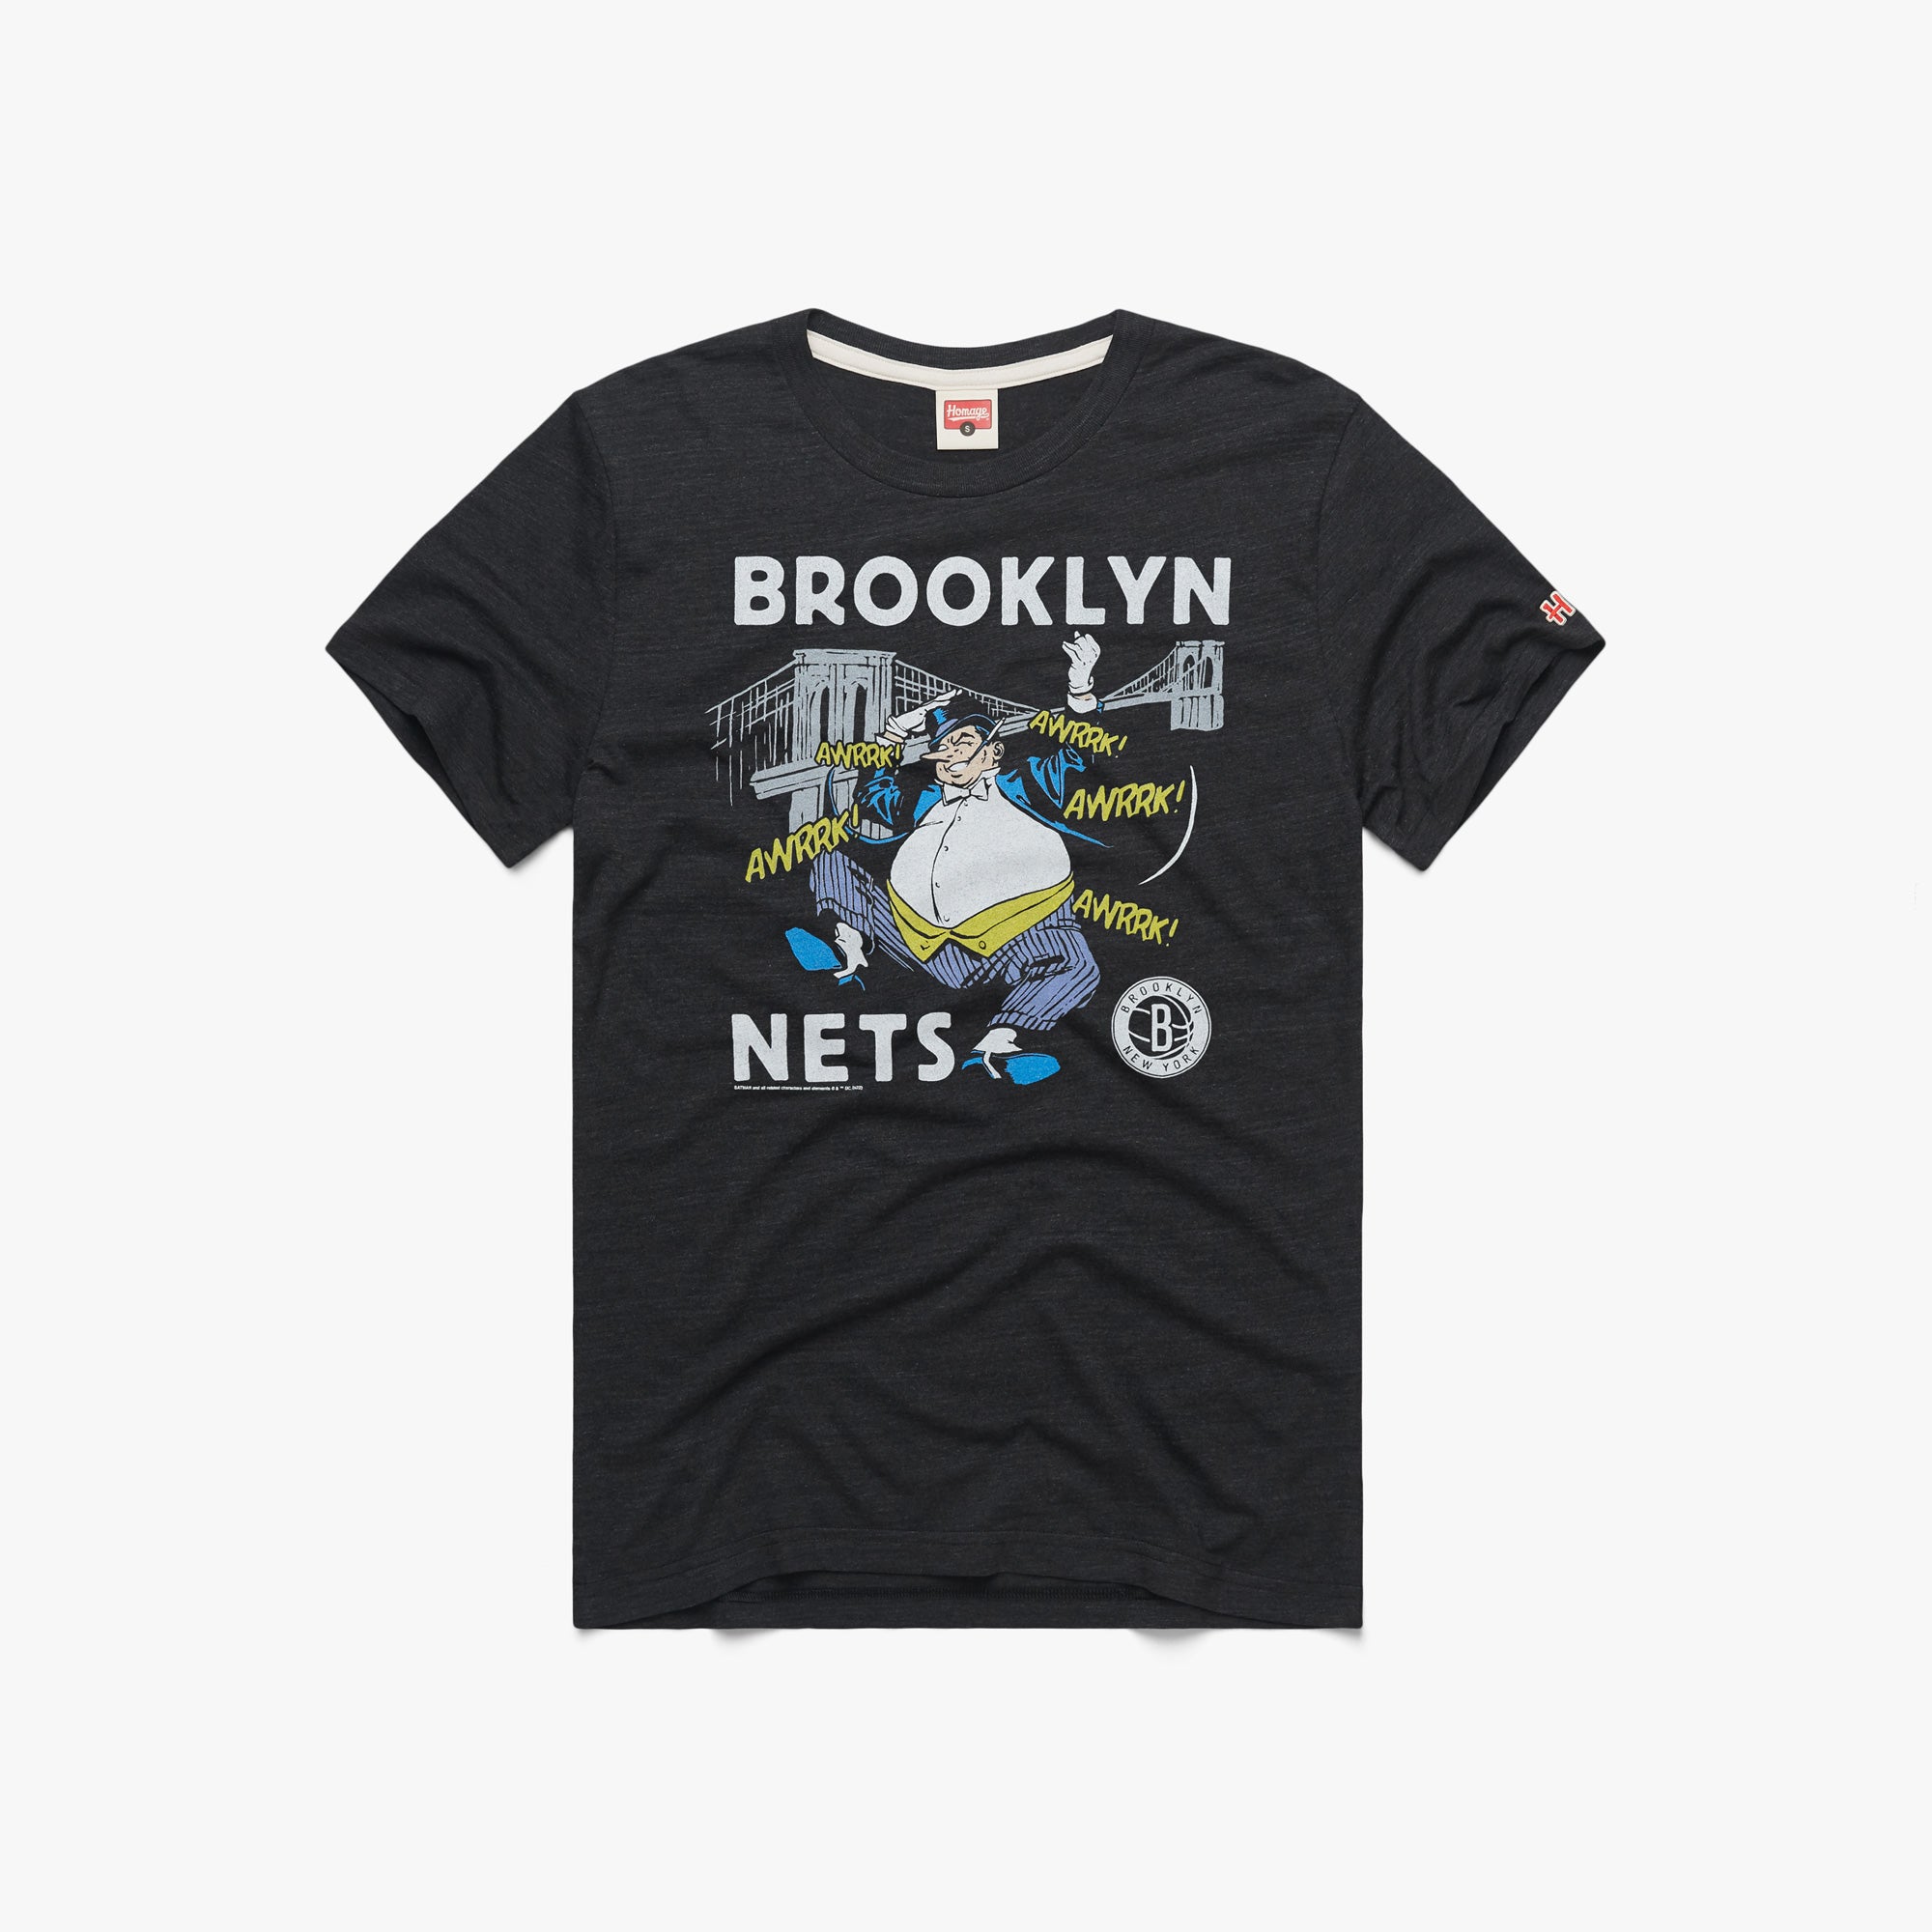 Brooklyn Nets on X:  / X